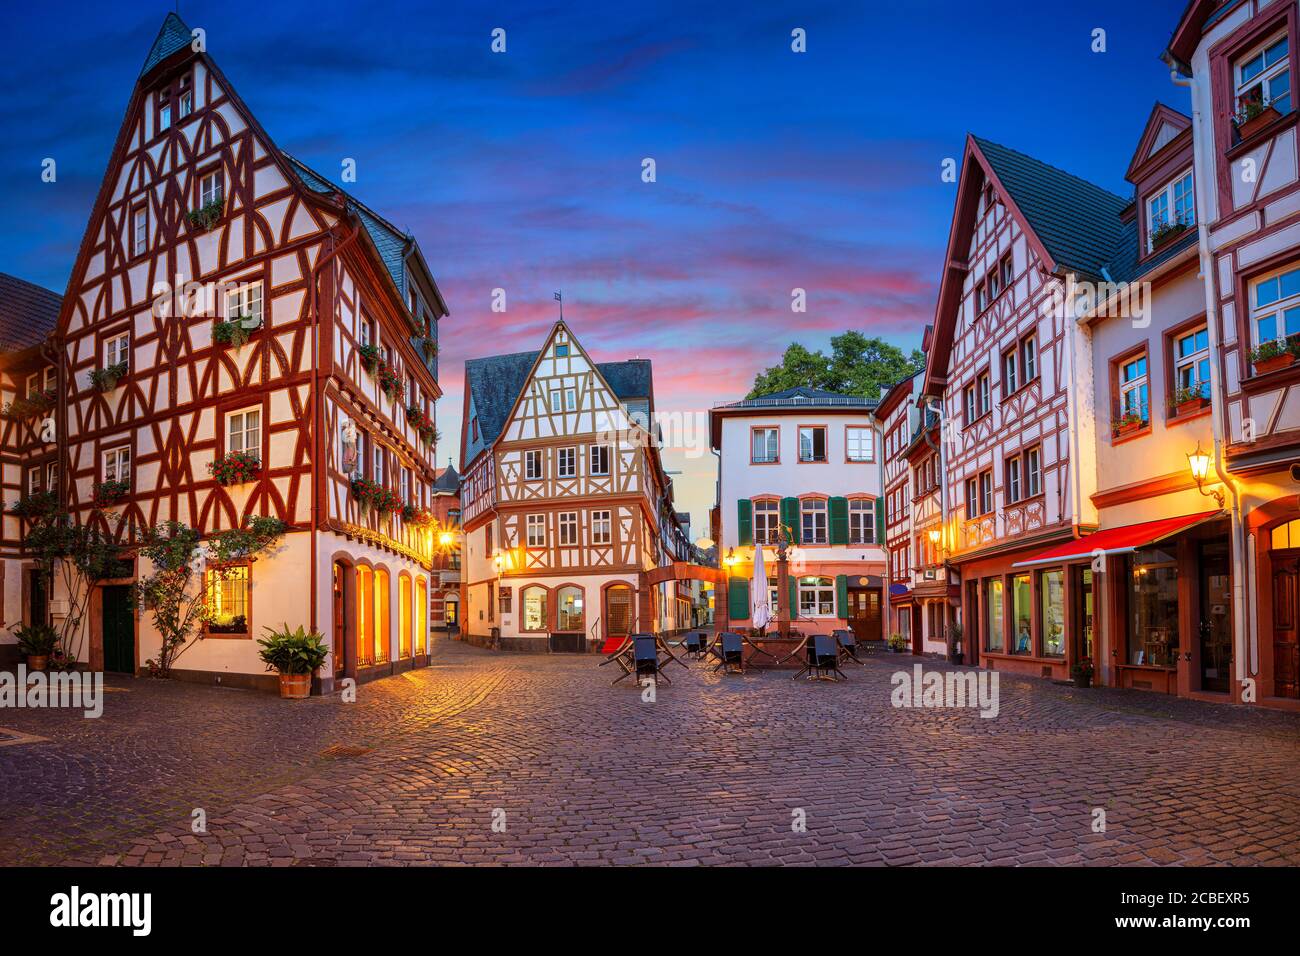 Magonza, Germania. Immagine del paesaggio urbano della città vecchia di Magonza durante l'ora del crepuscolo. Foto Stock